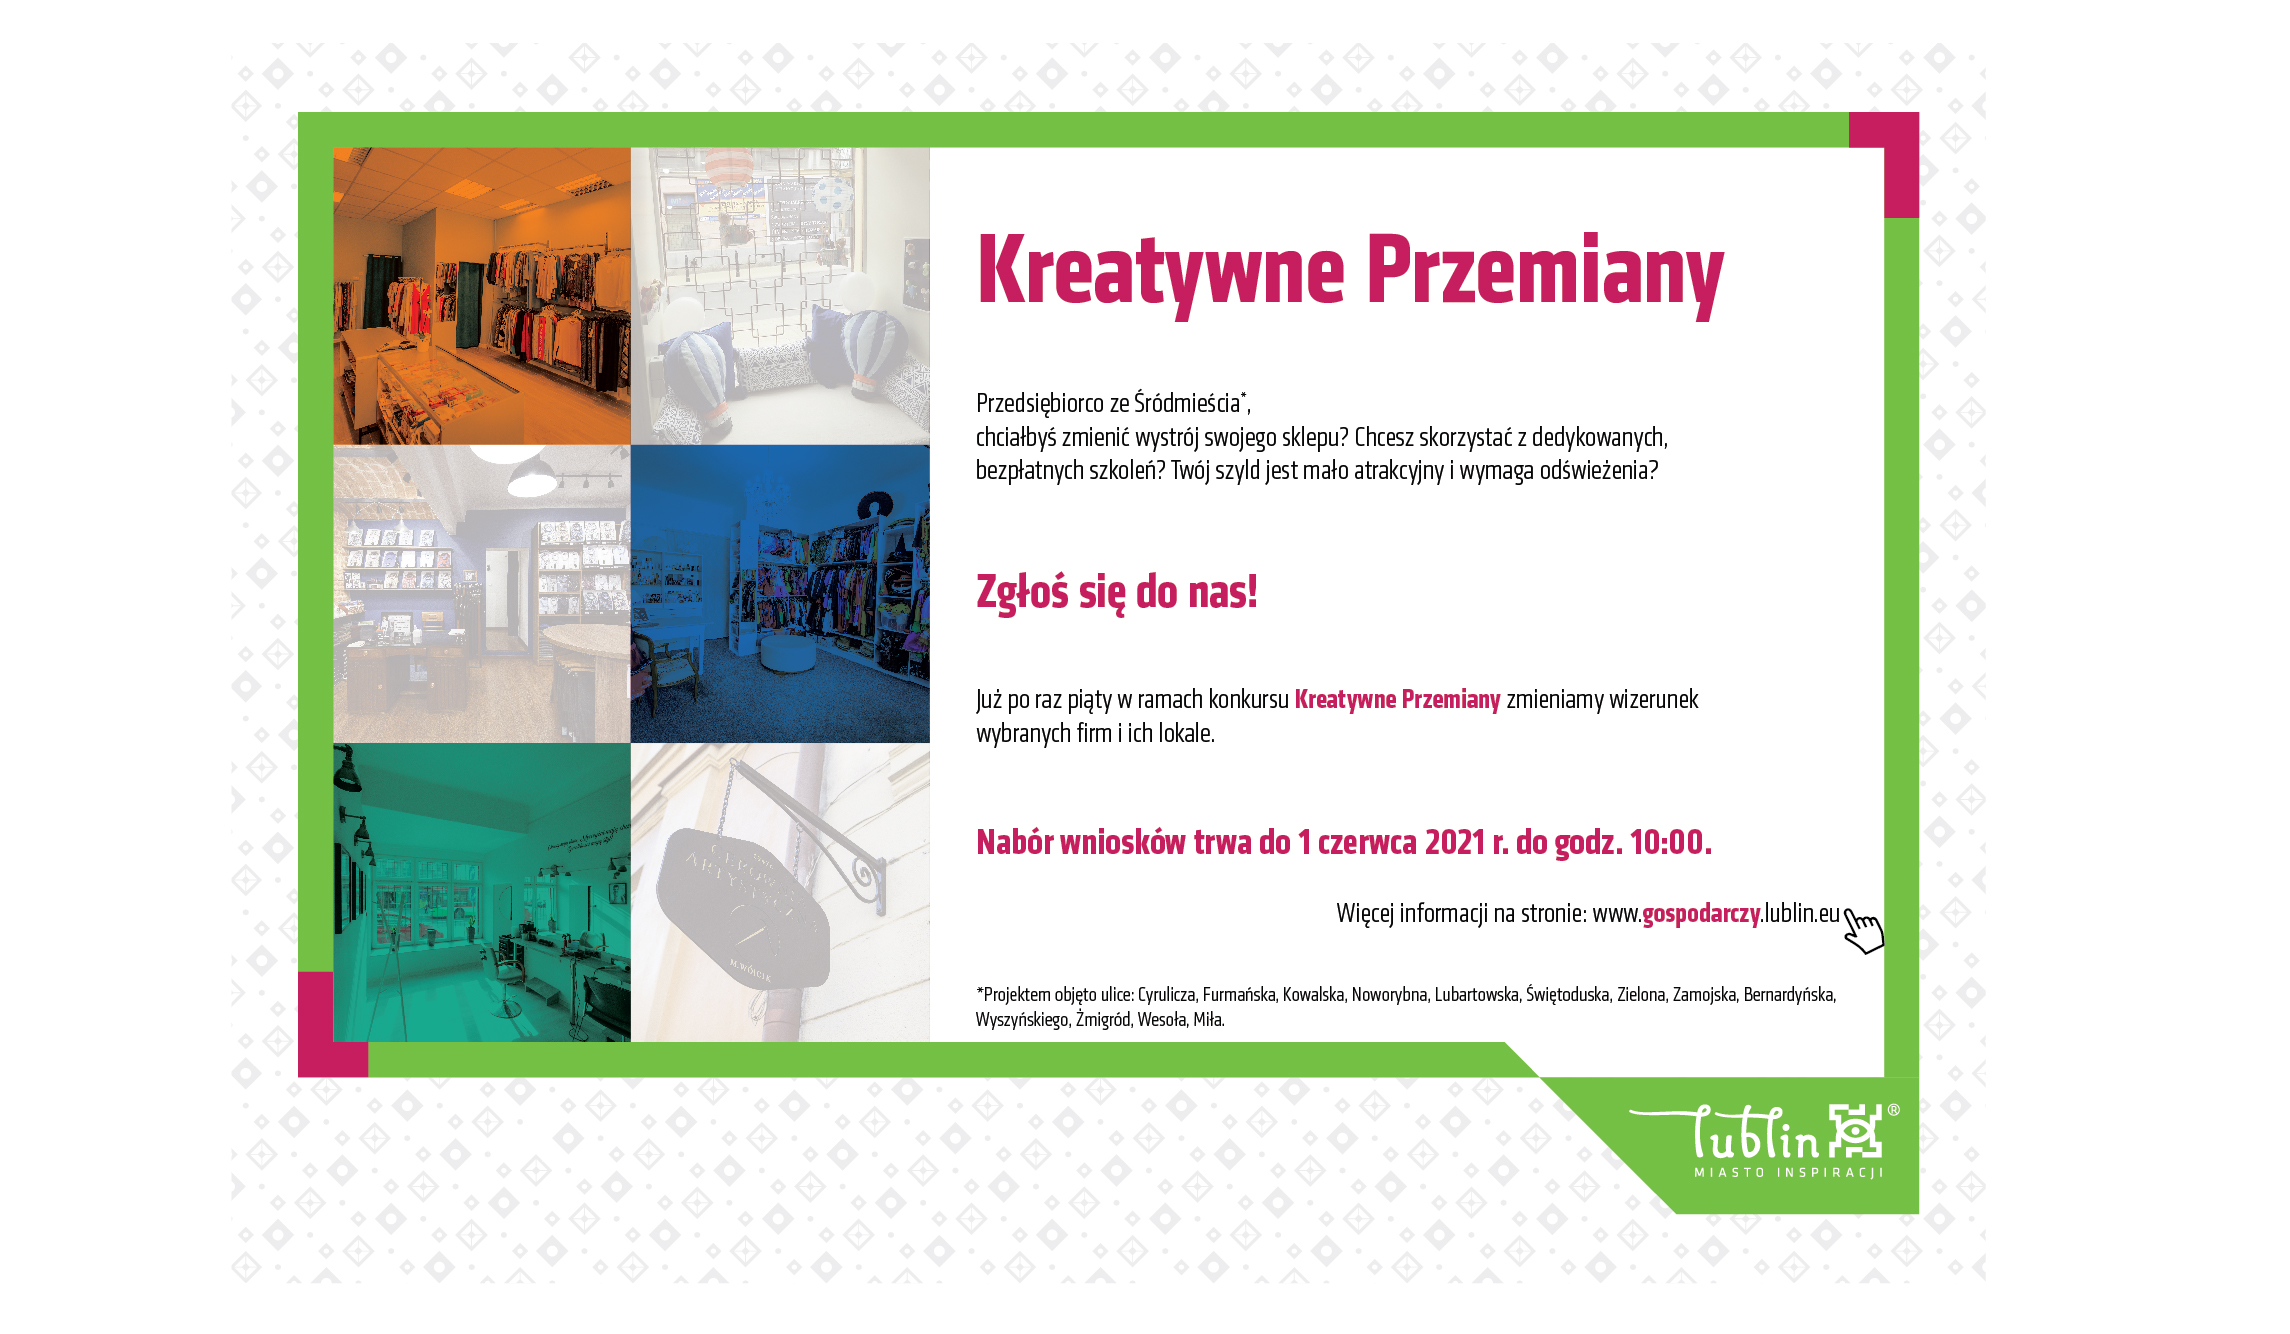  V edycja konkursu Kreatywne Przemiany dla lubelskich przedsiębiorców - Zdjęcie główne